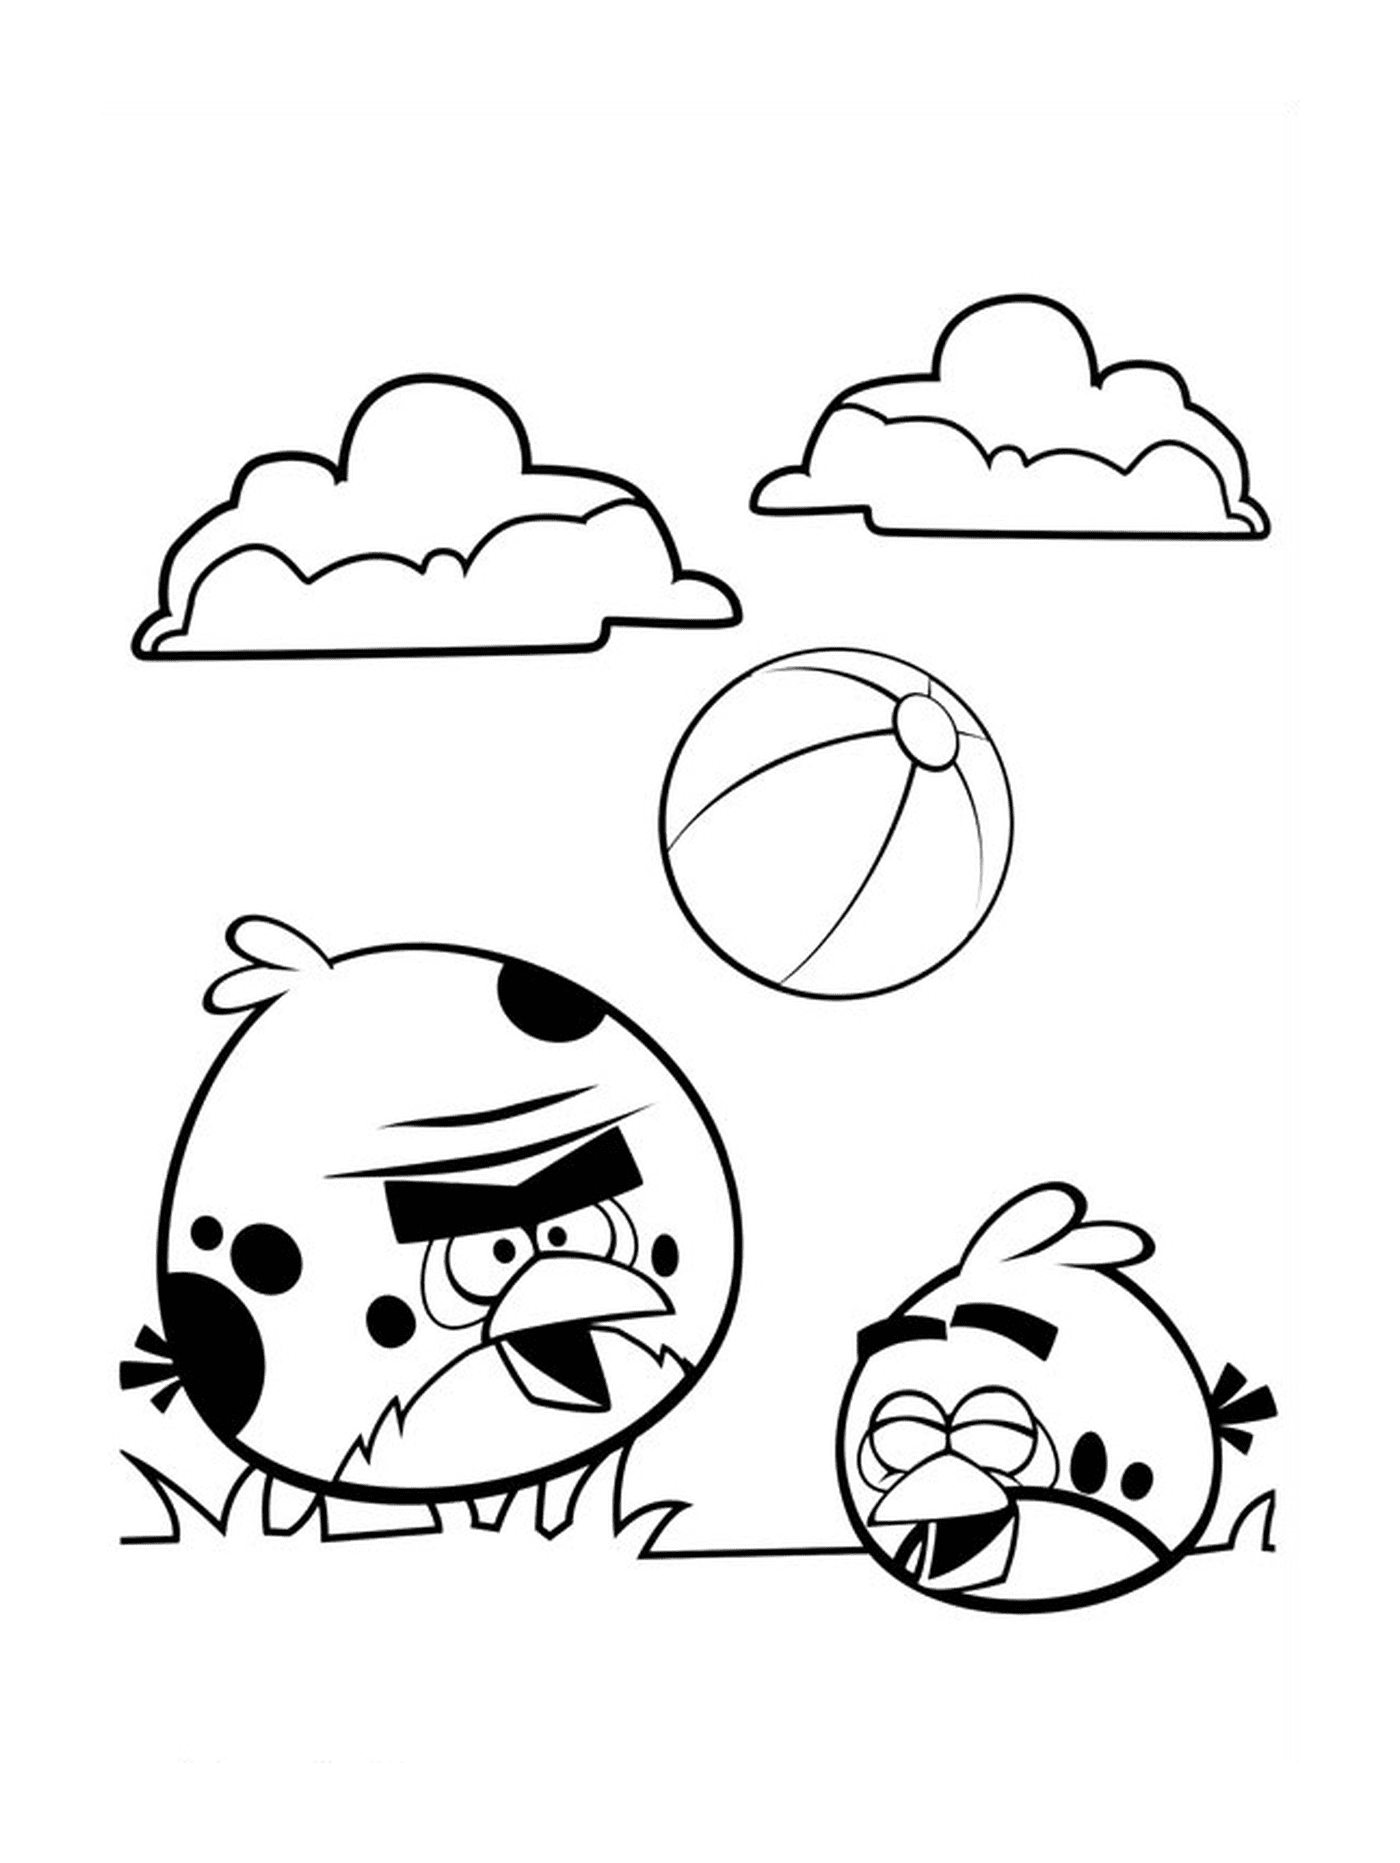   Angry Birds jouent au ballon de foot 